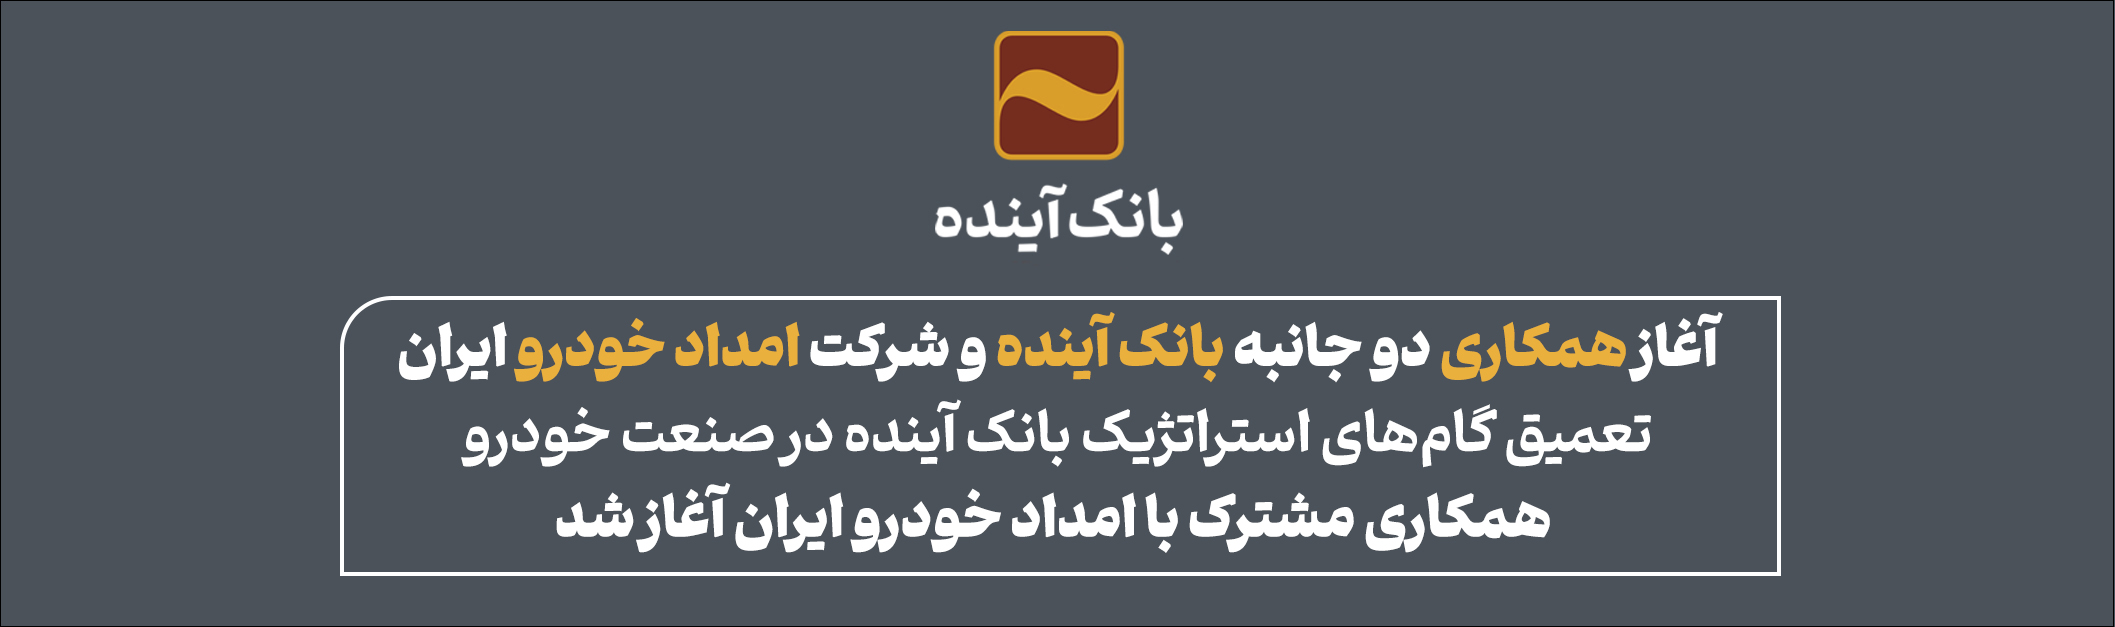 آغاز همکاری دو جانبه بانک آینده و شرکت امداد خودرو ایران